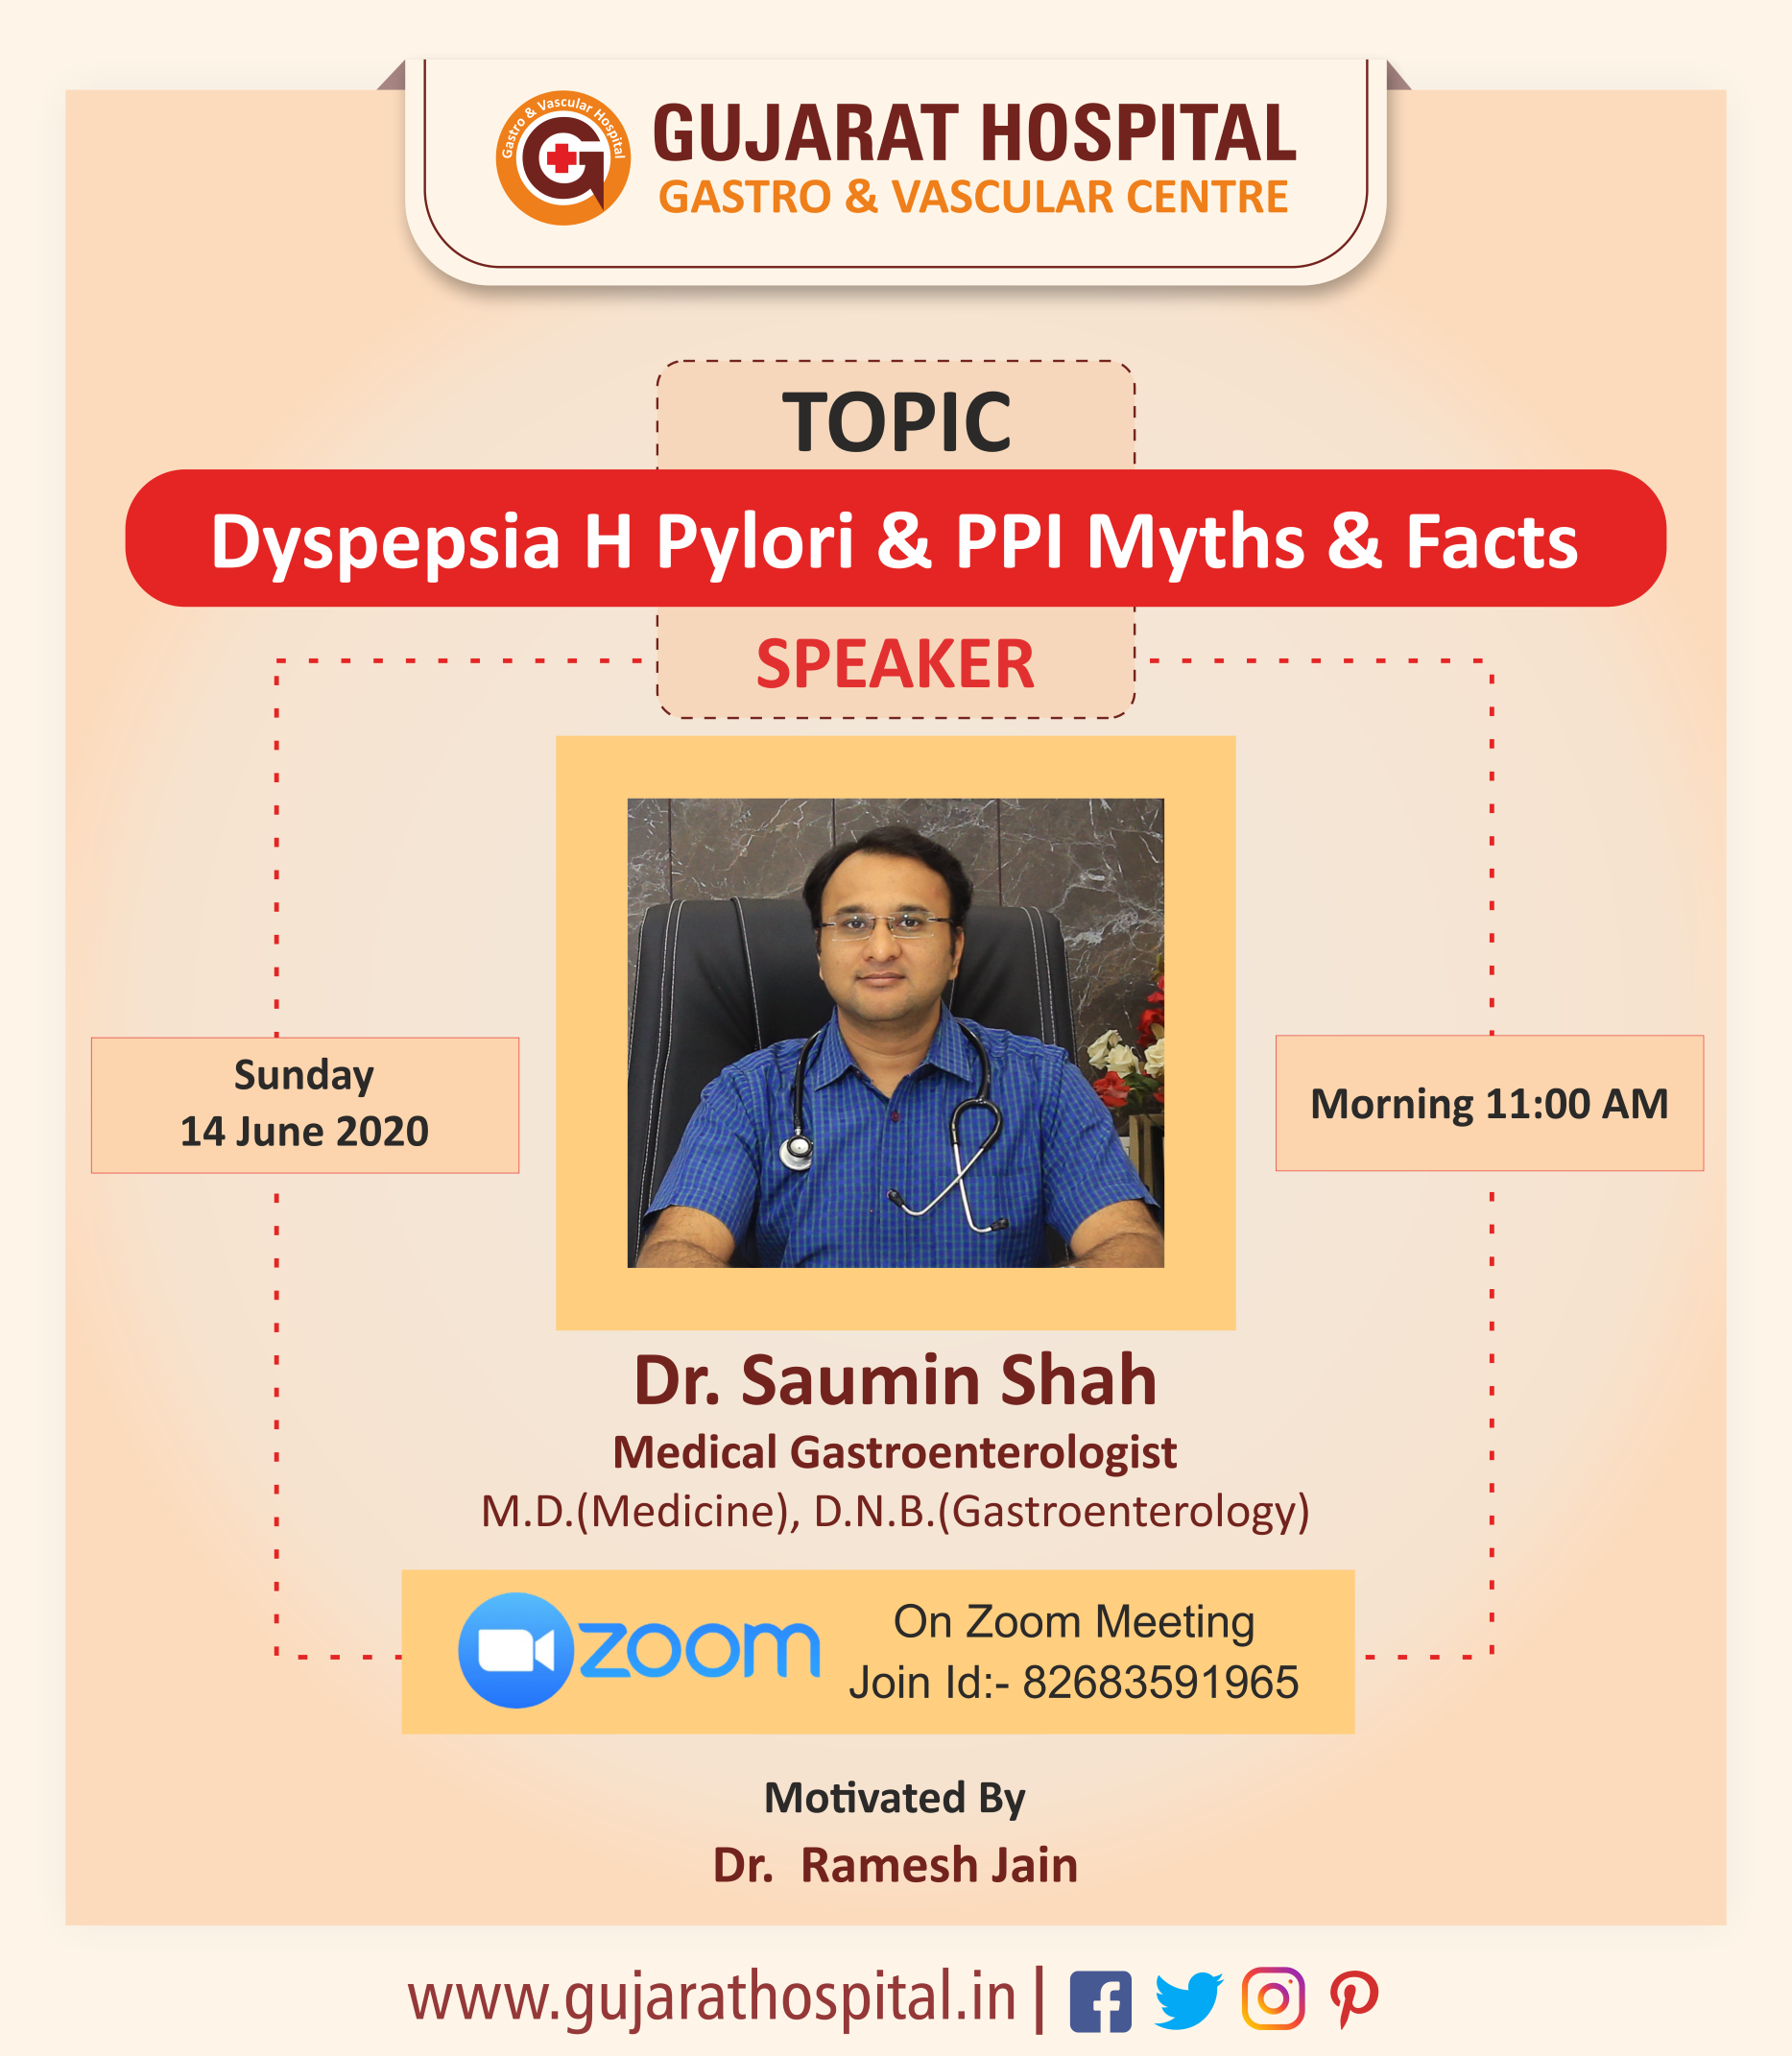 Dyspepsia H Pylori & PPI Myths & Facts